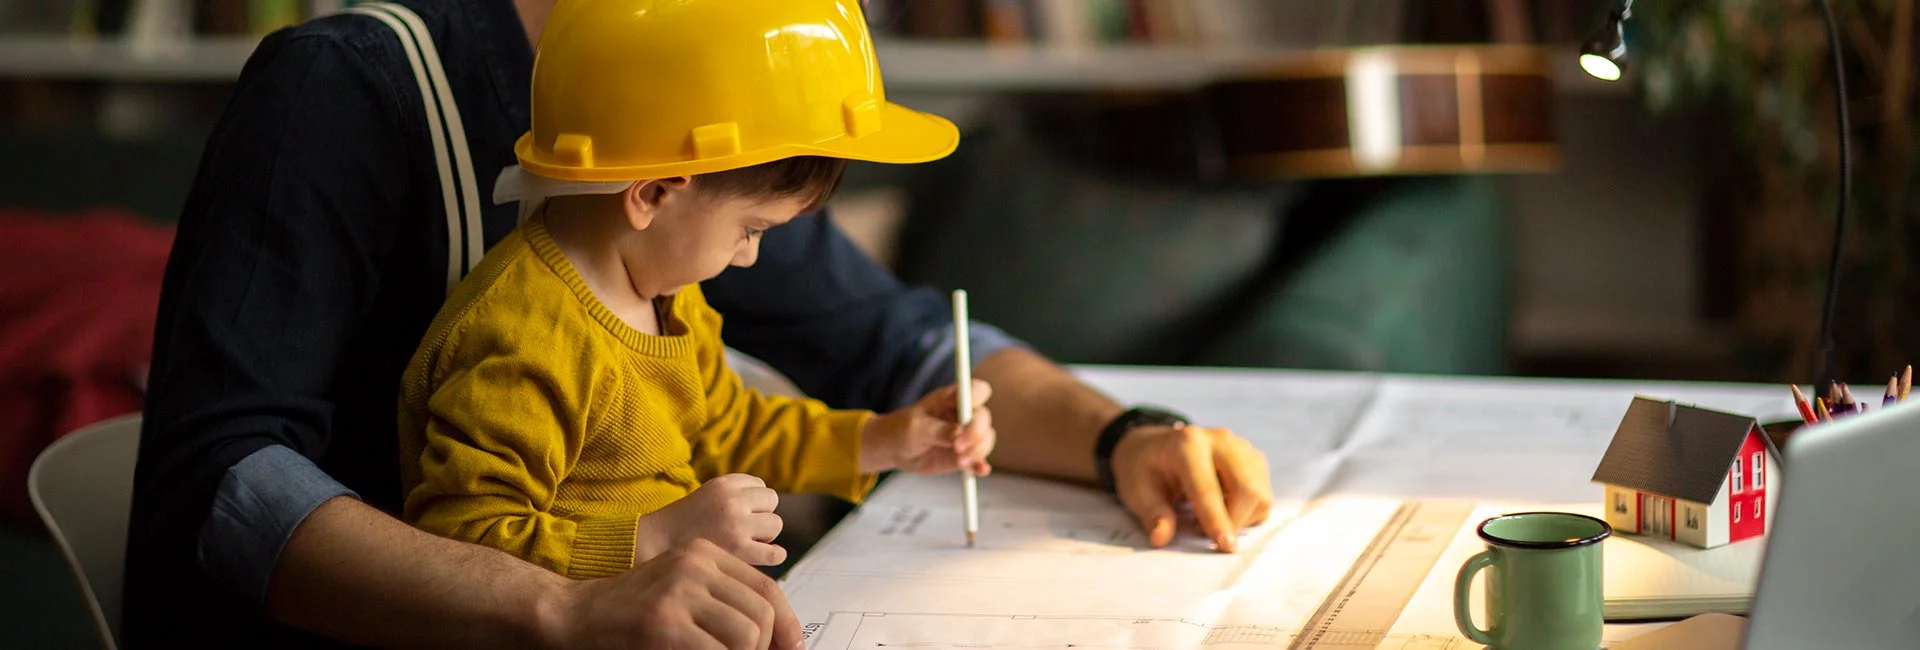 Ein kleiner Junge mit gelbem Helm sitzt bei seinem Vater auf dem Schoß an einem Schreibtisch. Der Vater zeigt dem Jungen einen Bauplan.